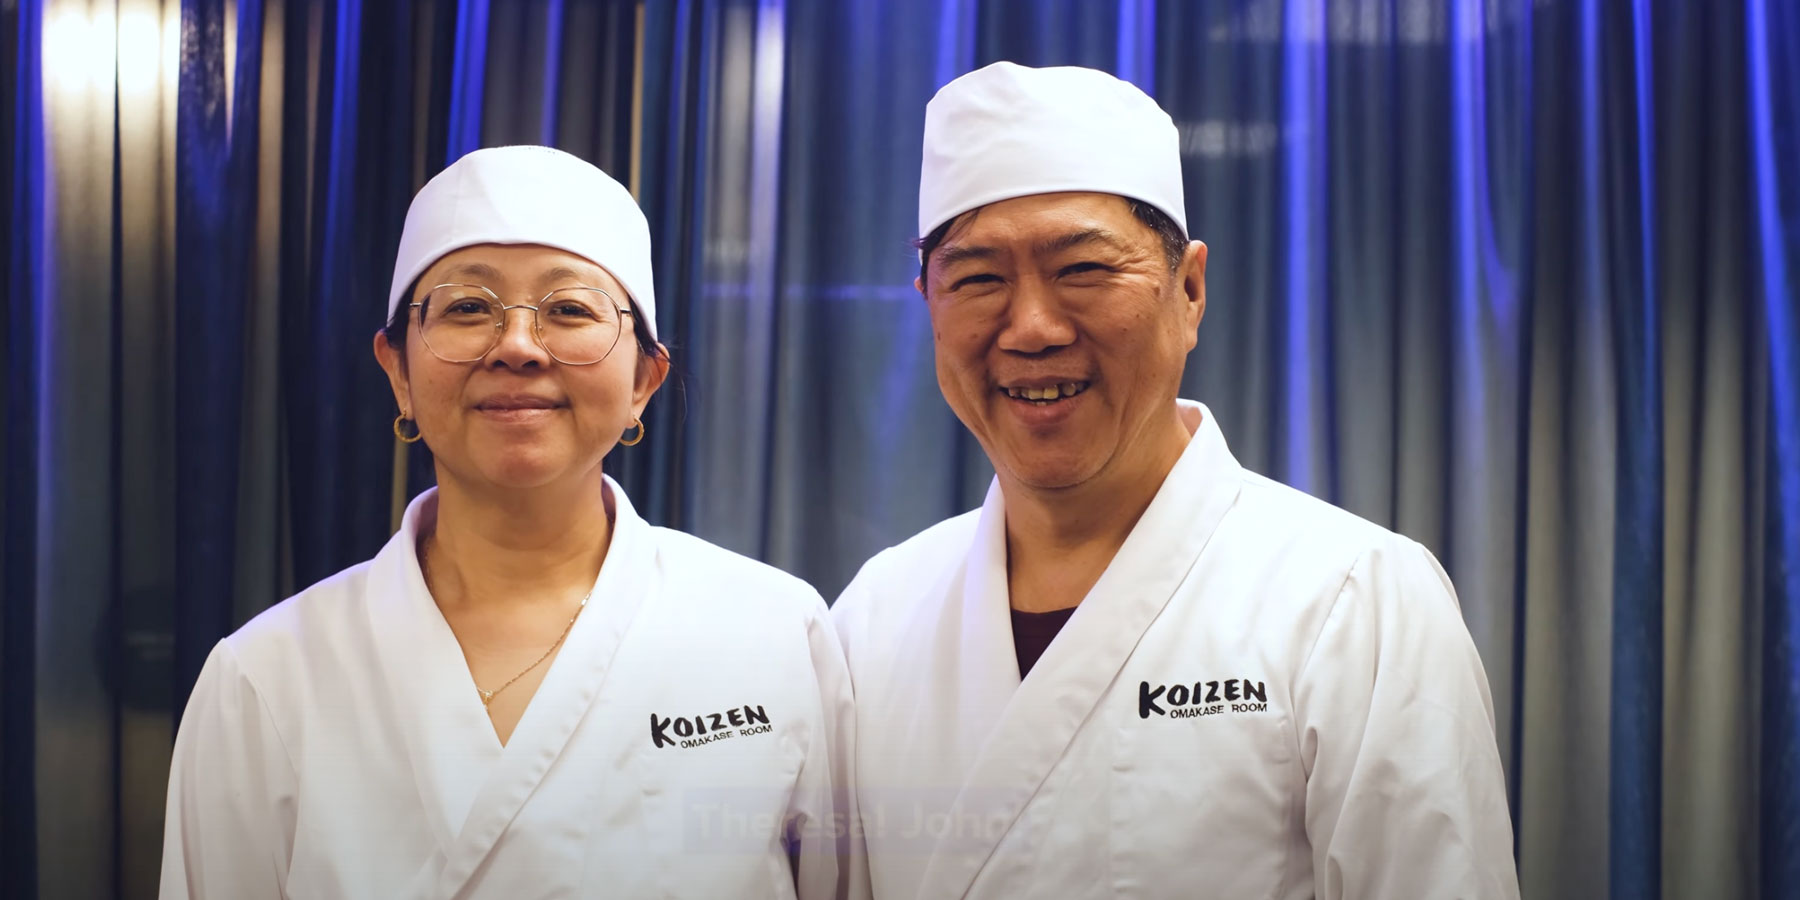 AW : Sushiworkshop med Koizen FULLBOKAT